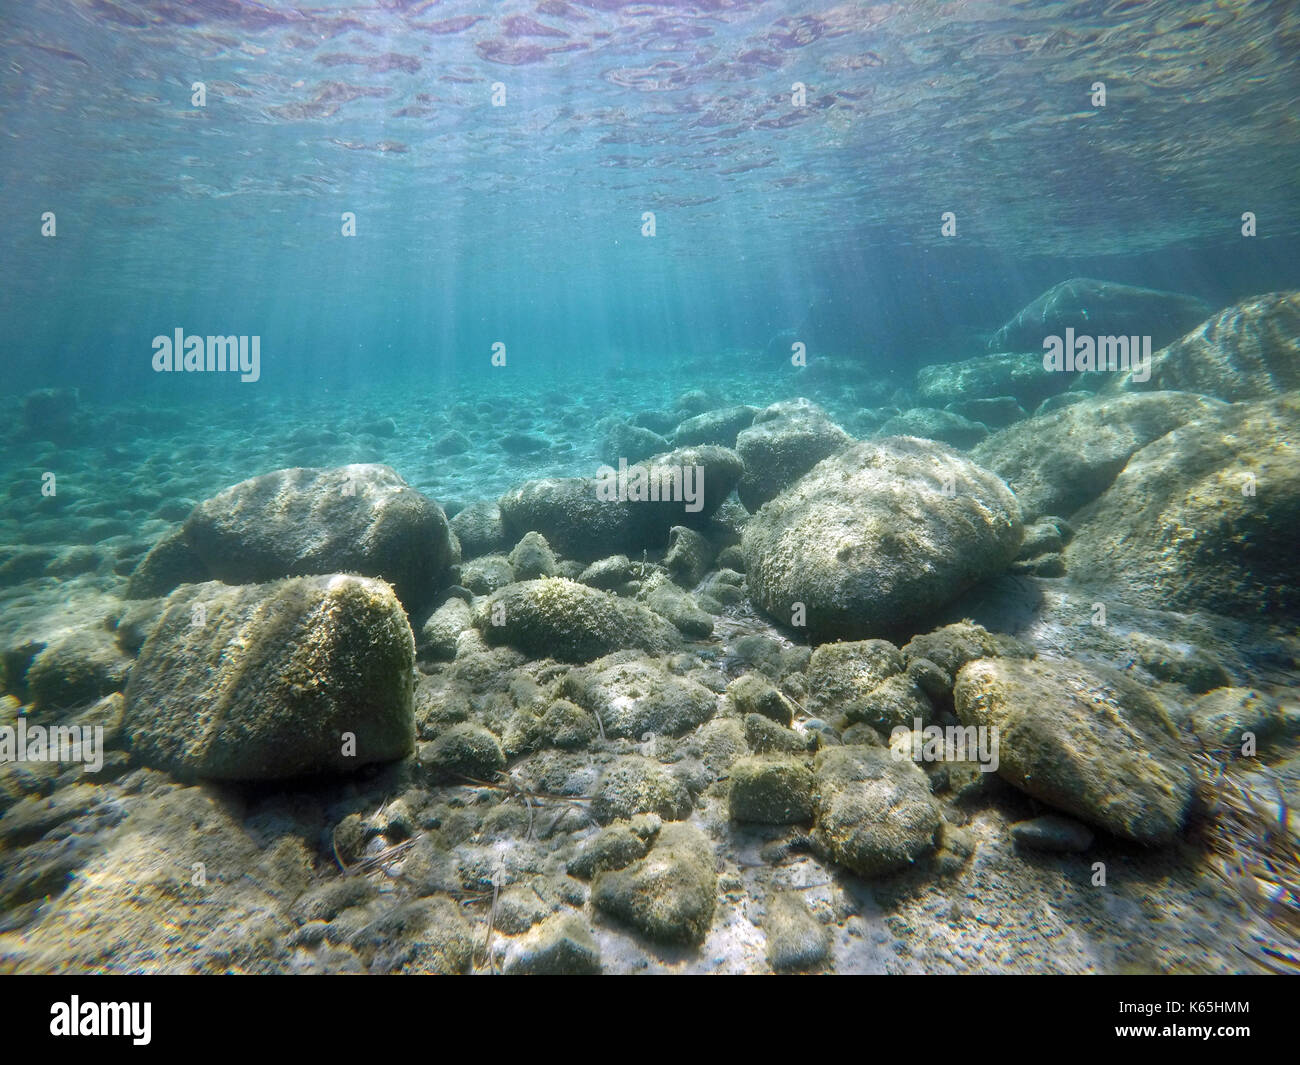 Sardinia, undersea image Stock Photo